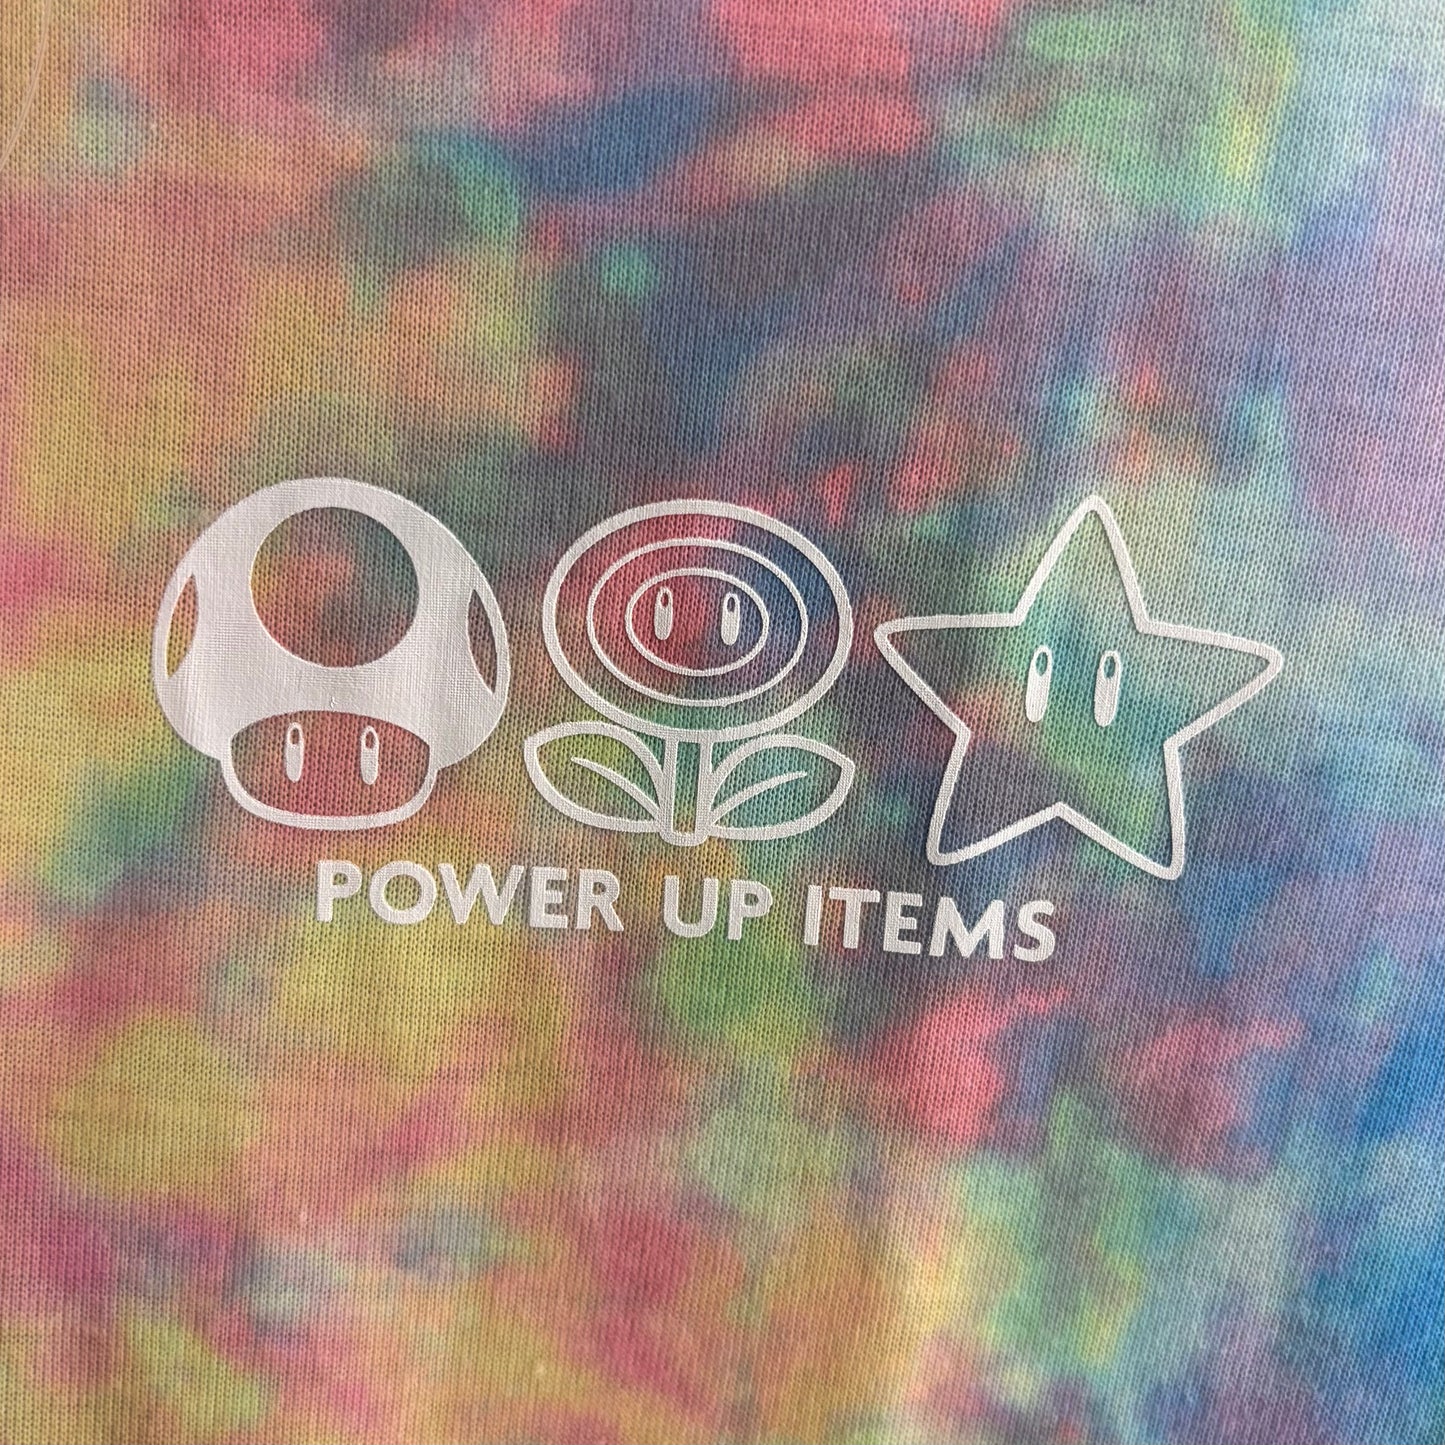 【訂貨】USJ Mario Power Up Items 道具圖案 彩色 Tshirt